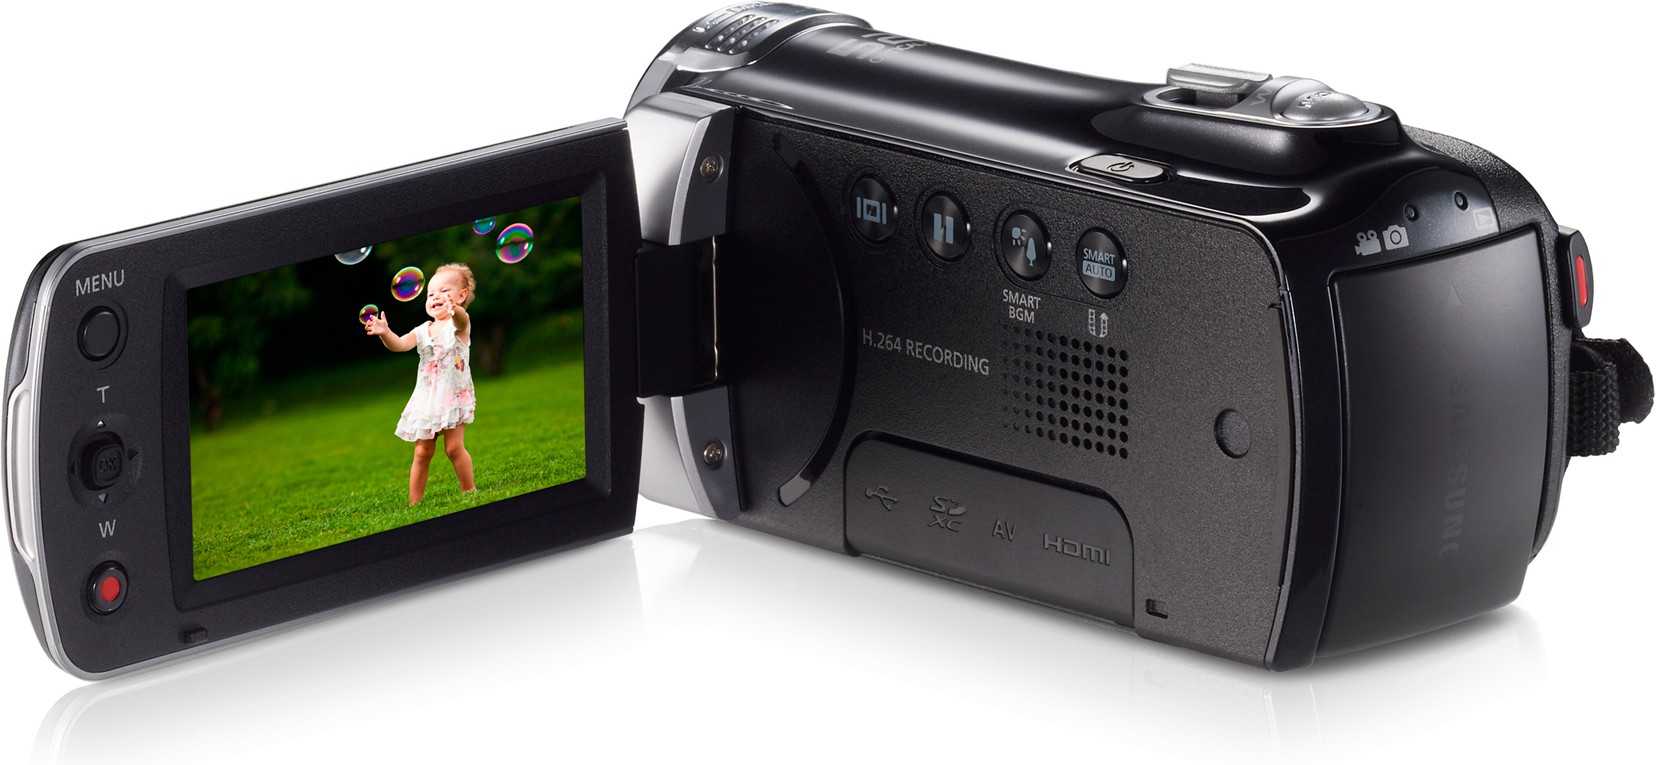 Видеокамера Samsung HMX-F90 White - подробные характеристики обзоры видео фото Цены в интернет-магазинах где можно купить видеокамеру Samsung HMX-F90 White